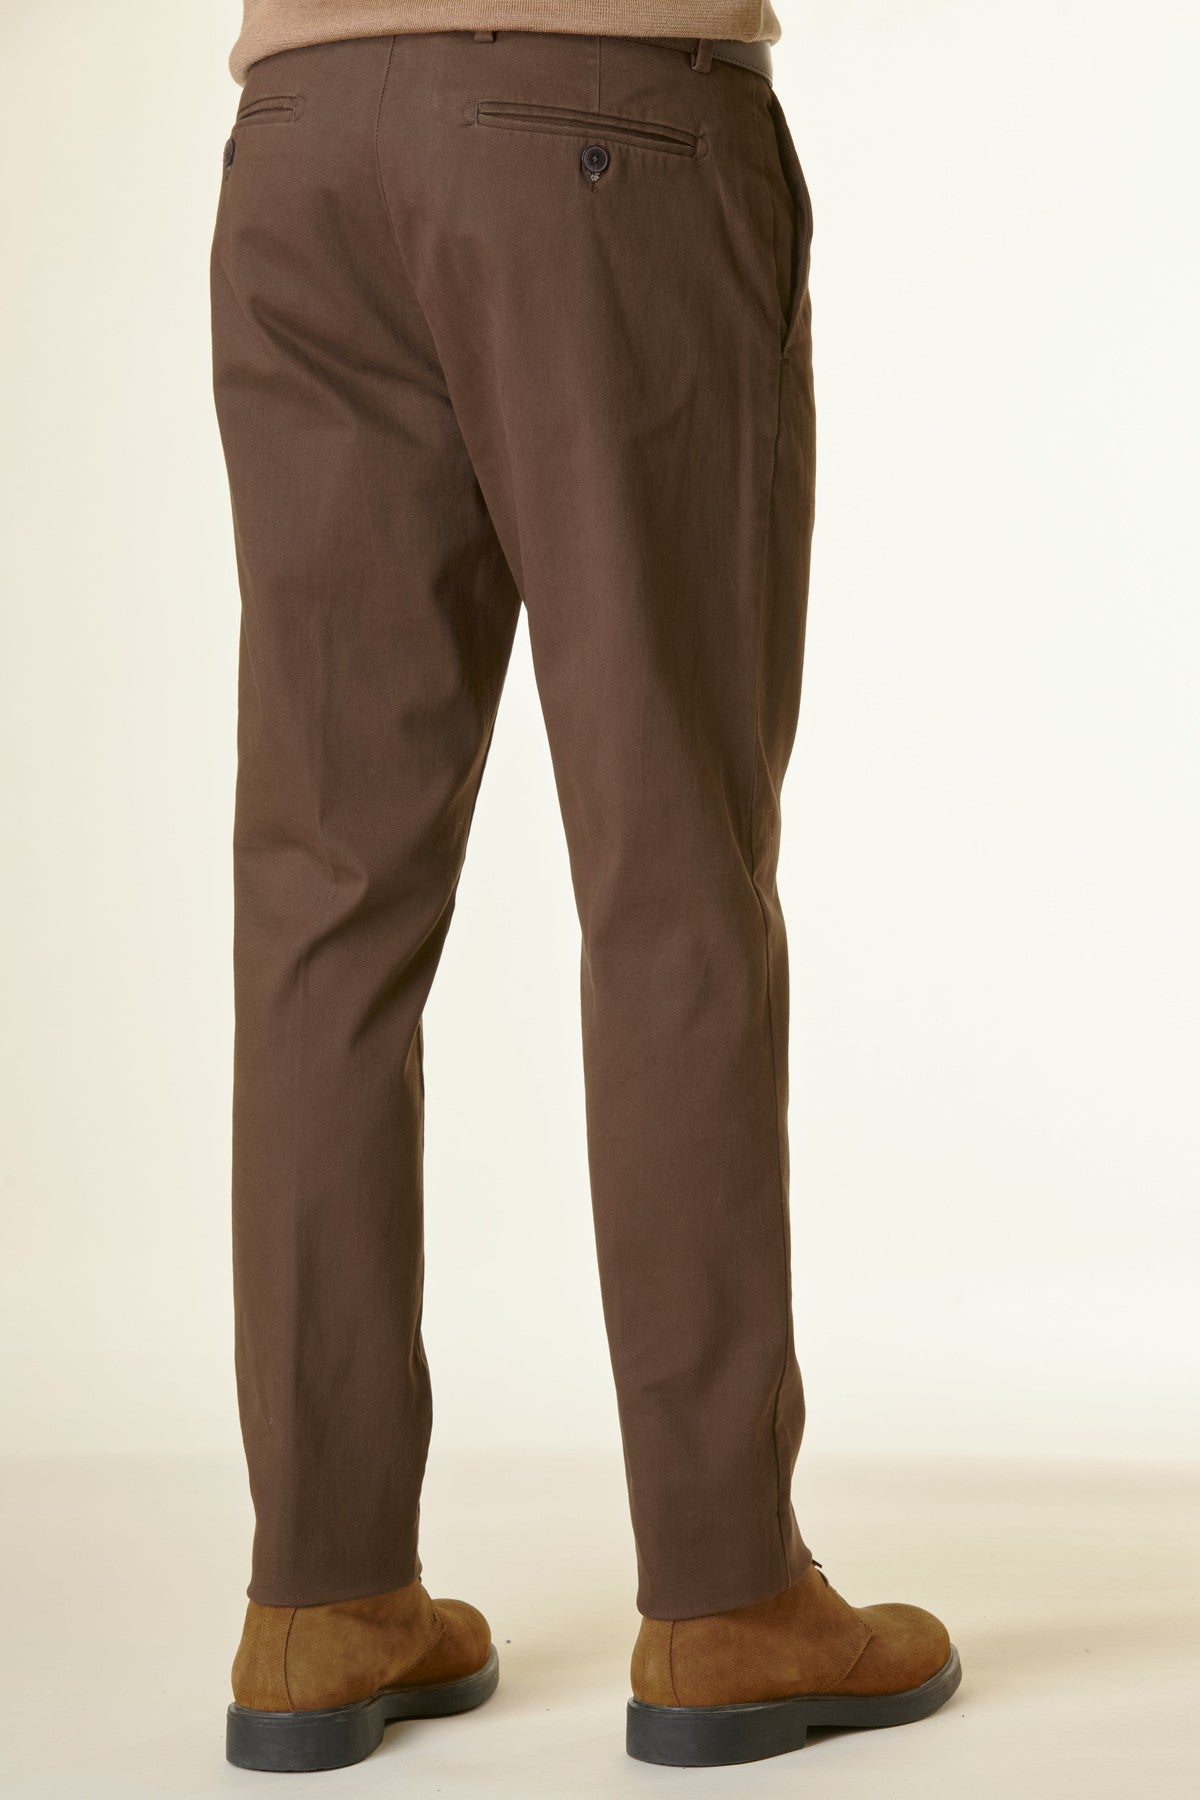 Pantalone marrone twill cotone